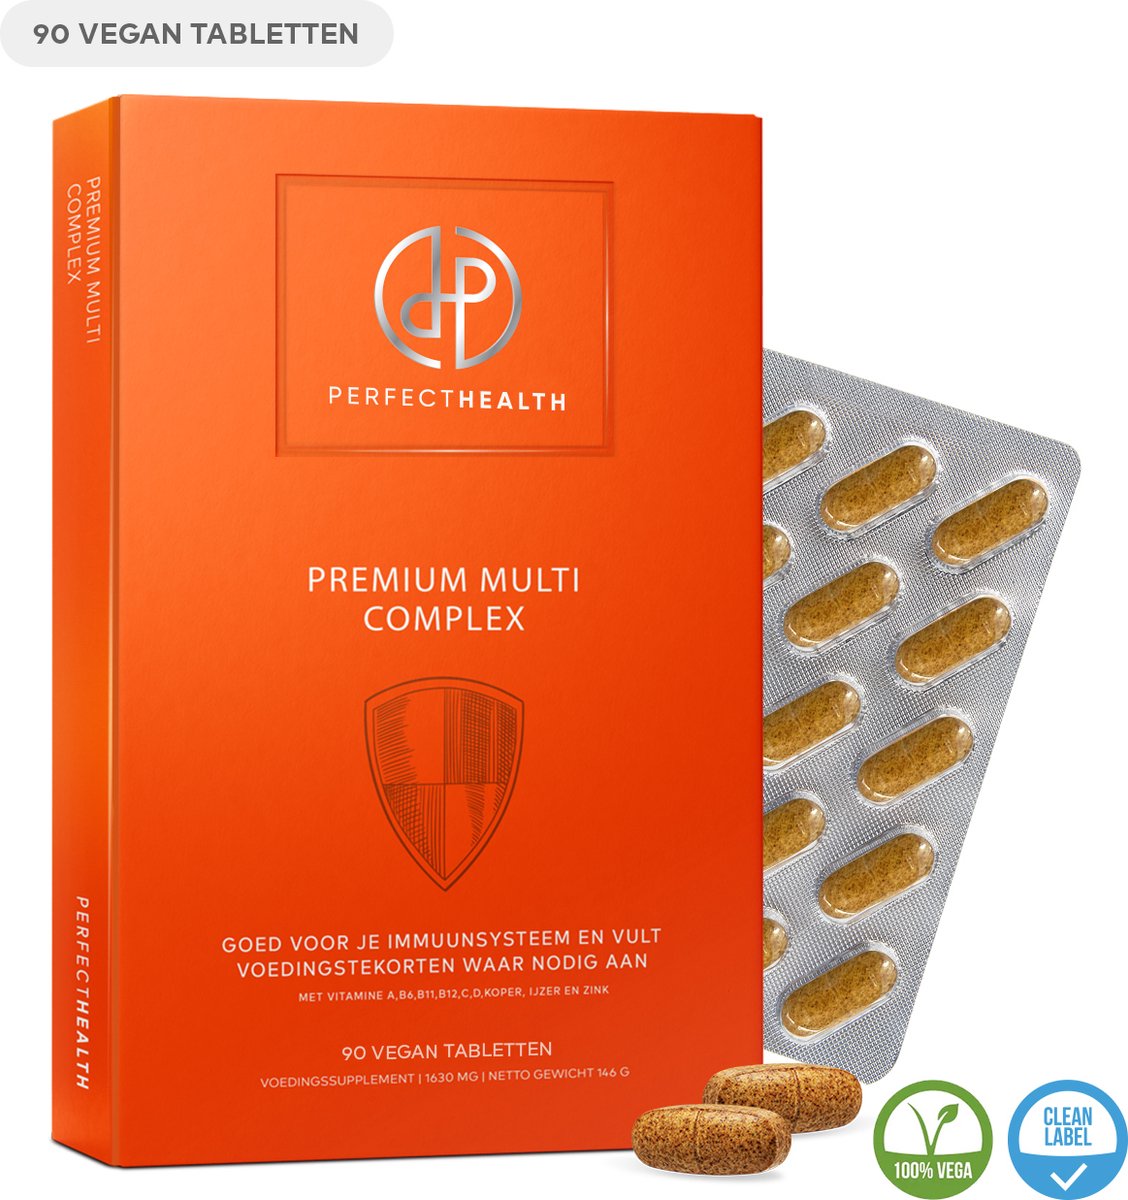 Perfect Health - Premium Multi Complex - Multivitaminen en Mineralen - Immuunsysteem en energiehuishouding - Hoog gedoseerd- 90 Vegan tabletten